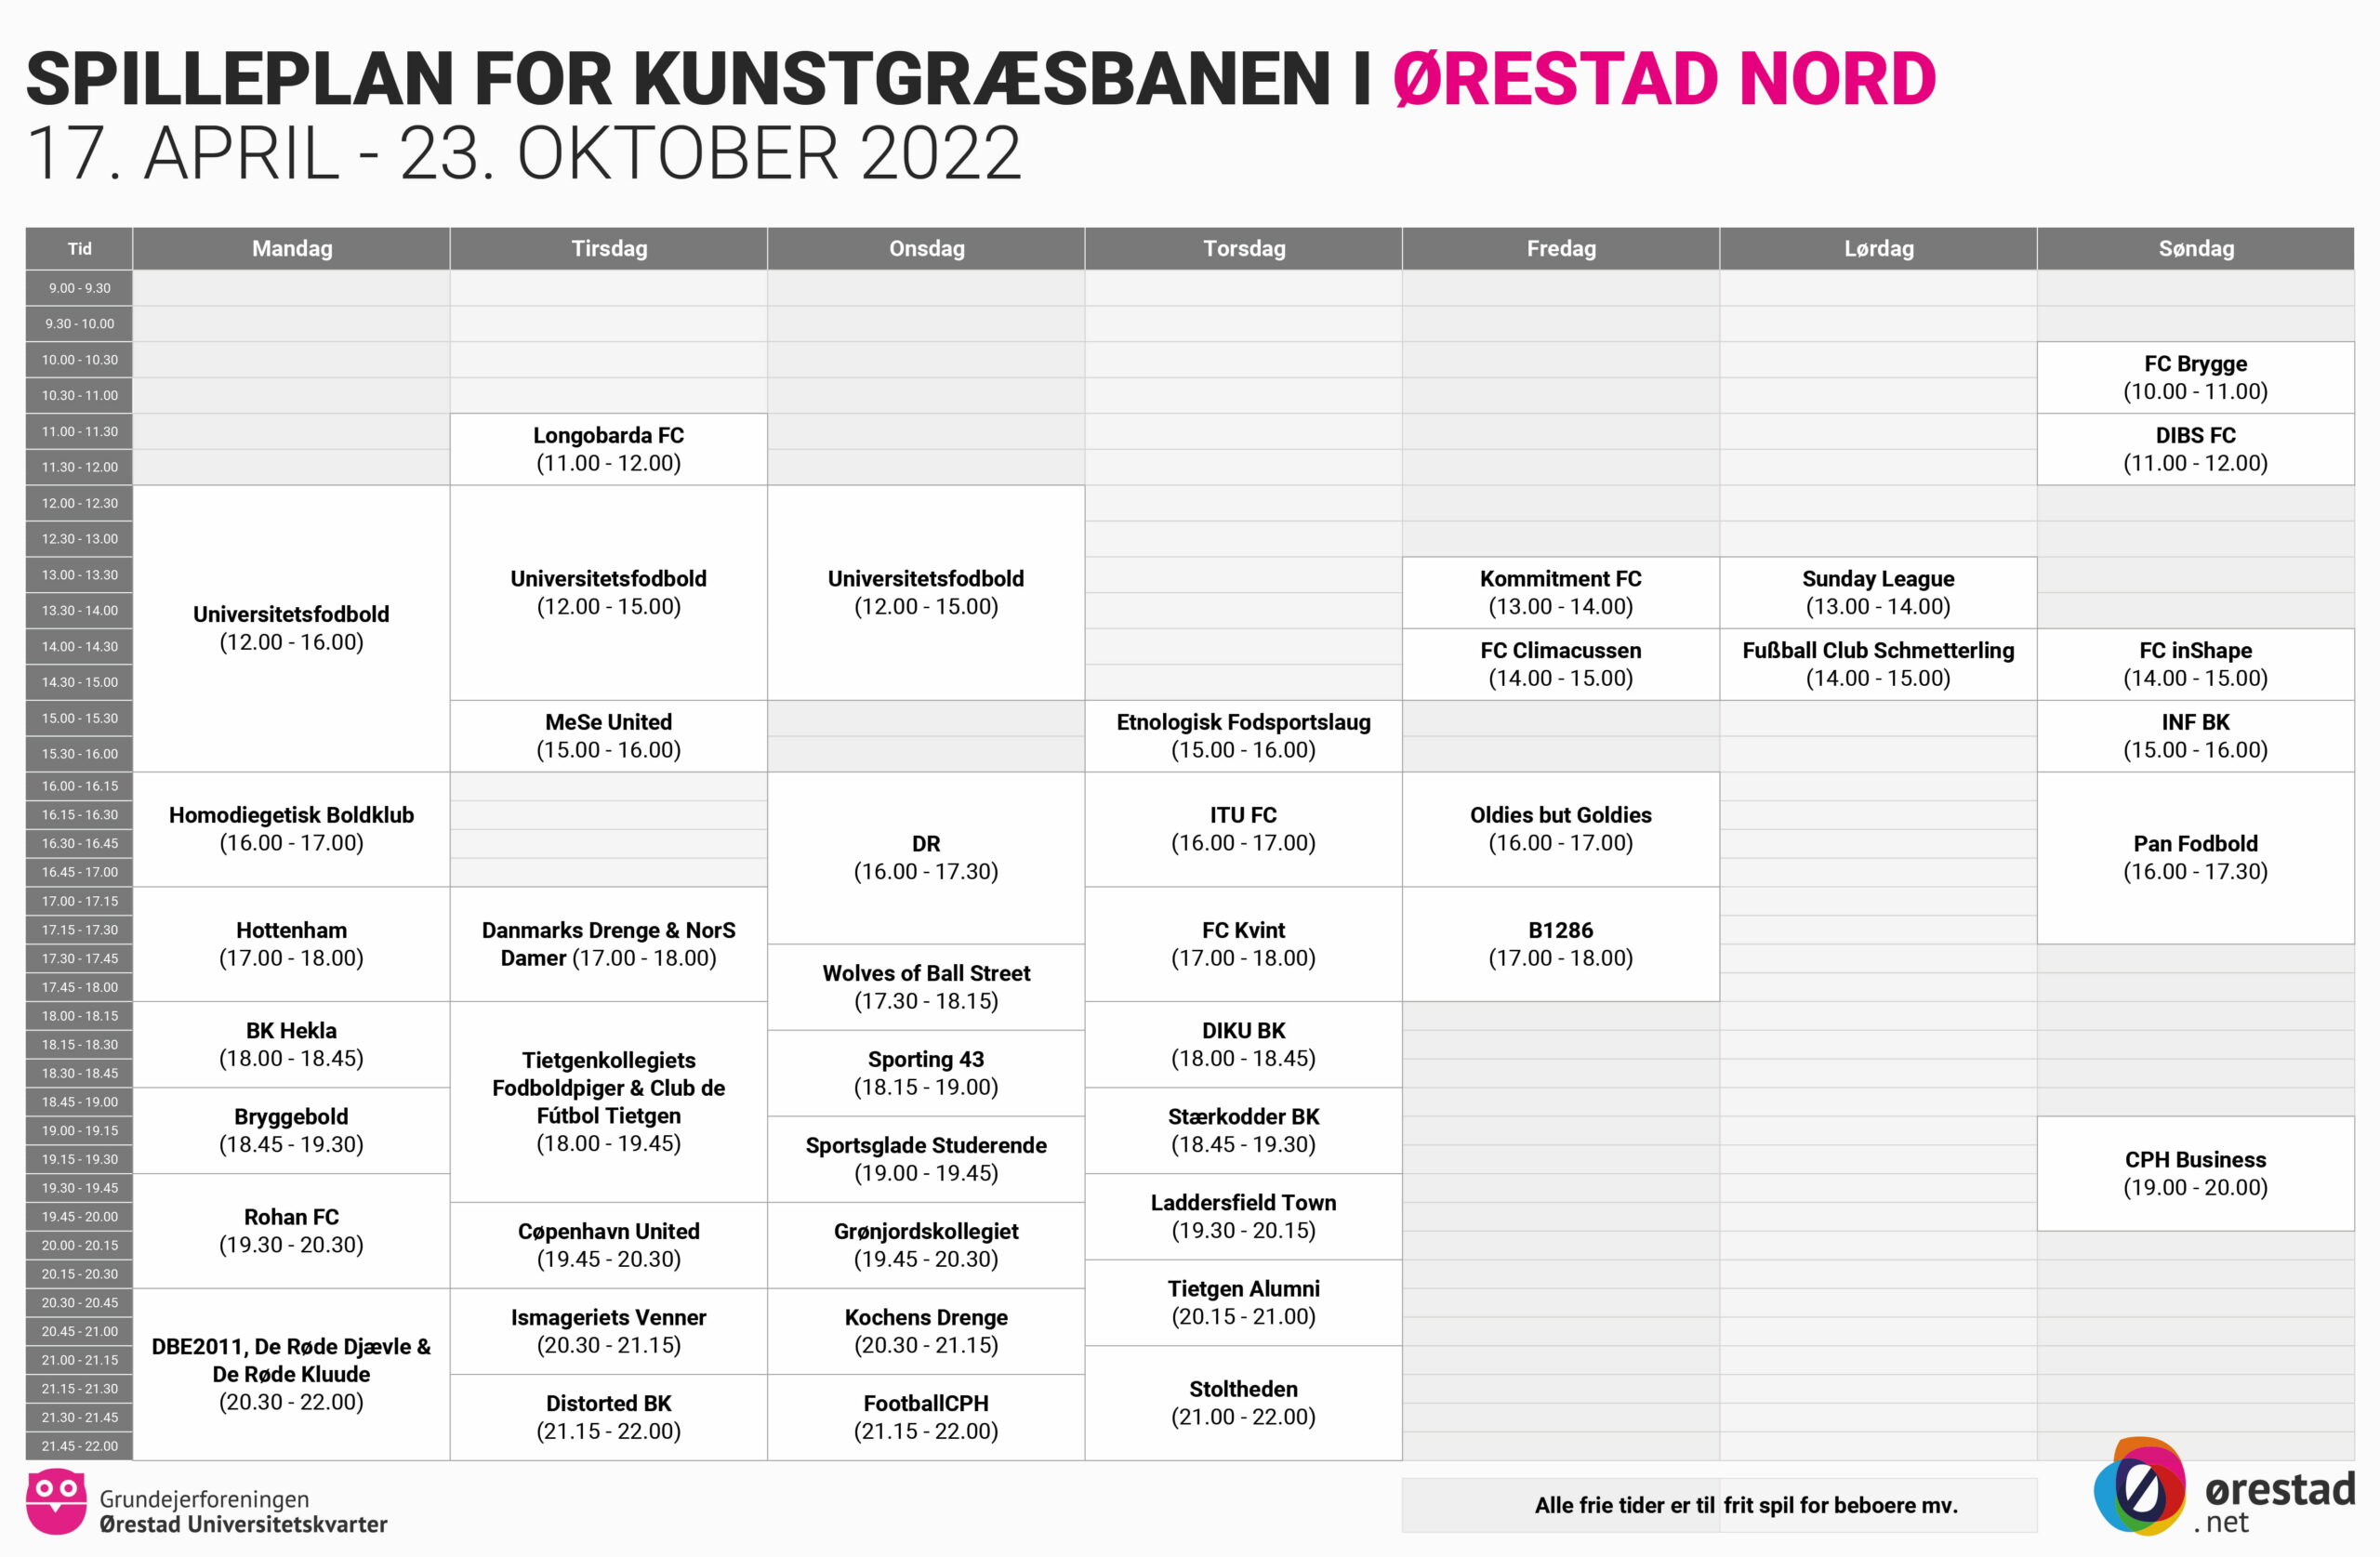 Spilleplan for kunstgræsbanen i Ørestad Nord, gældende fra 7. april - 23. oktober 2022.